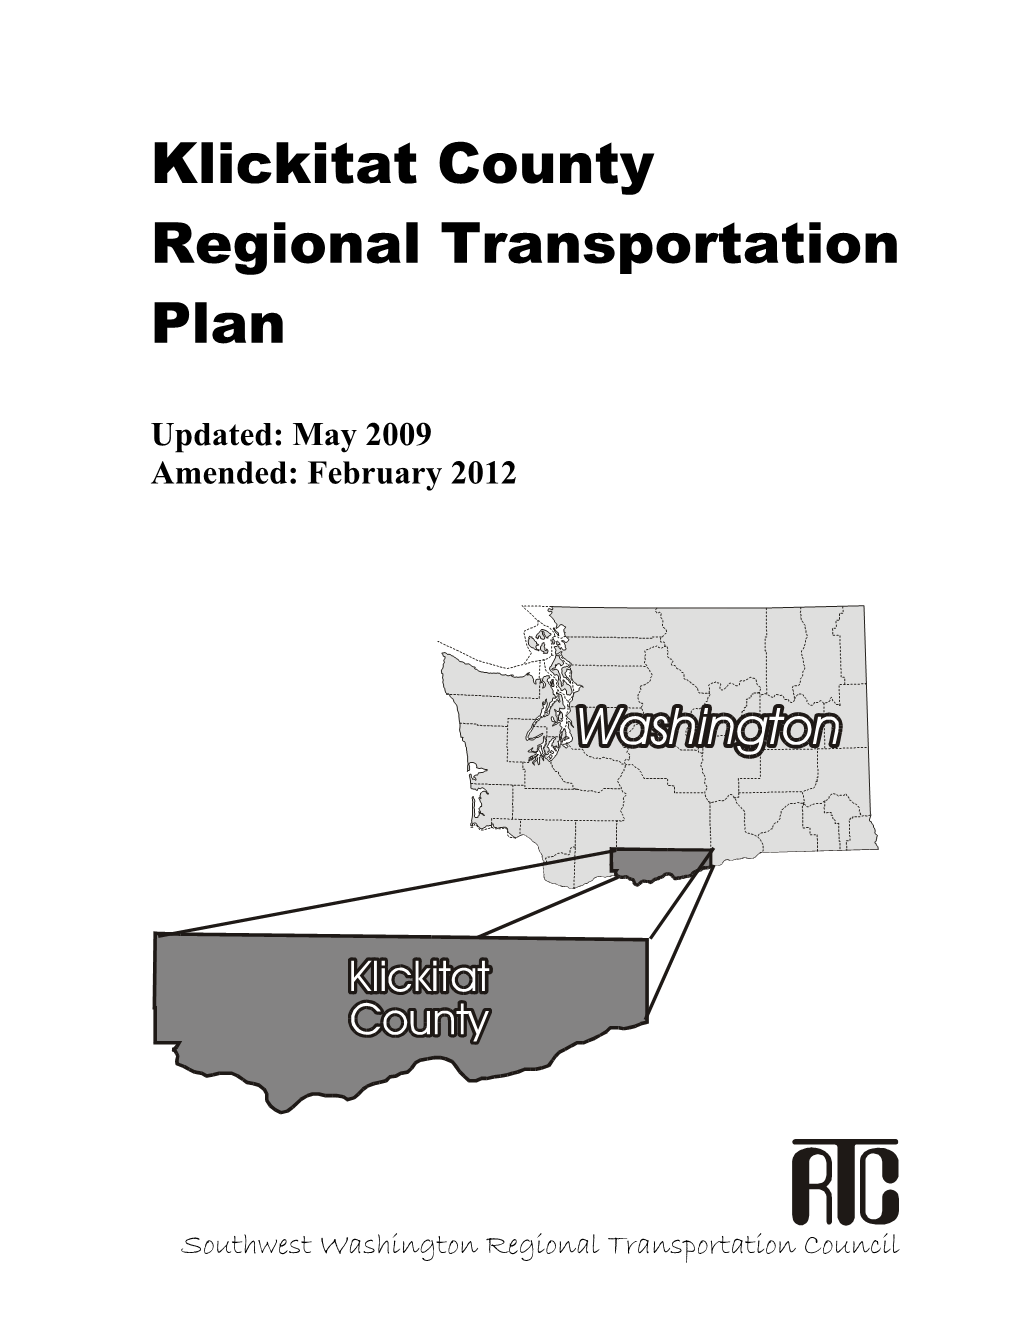 Klickitat County Regional Transportation Plan, Amended